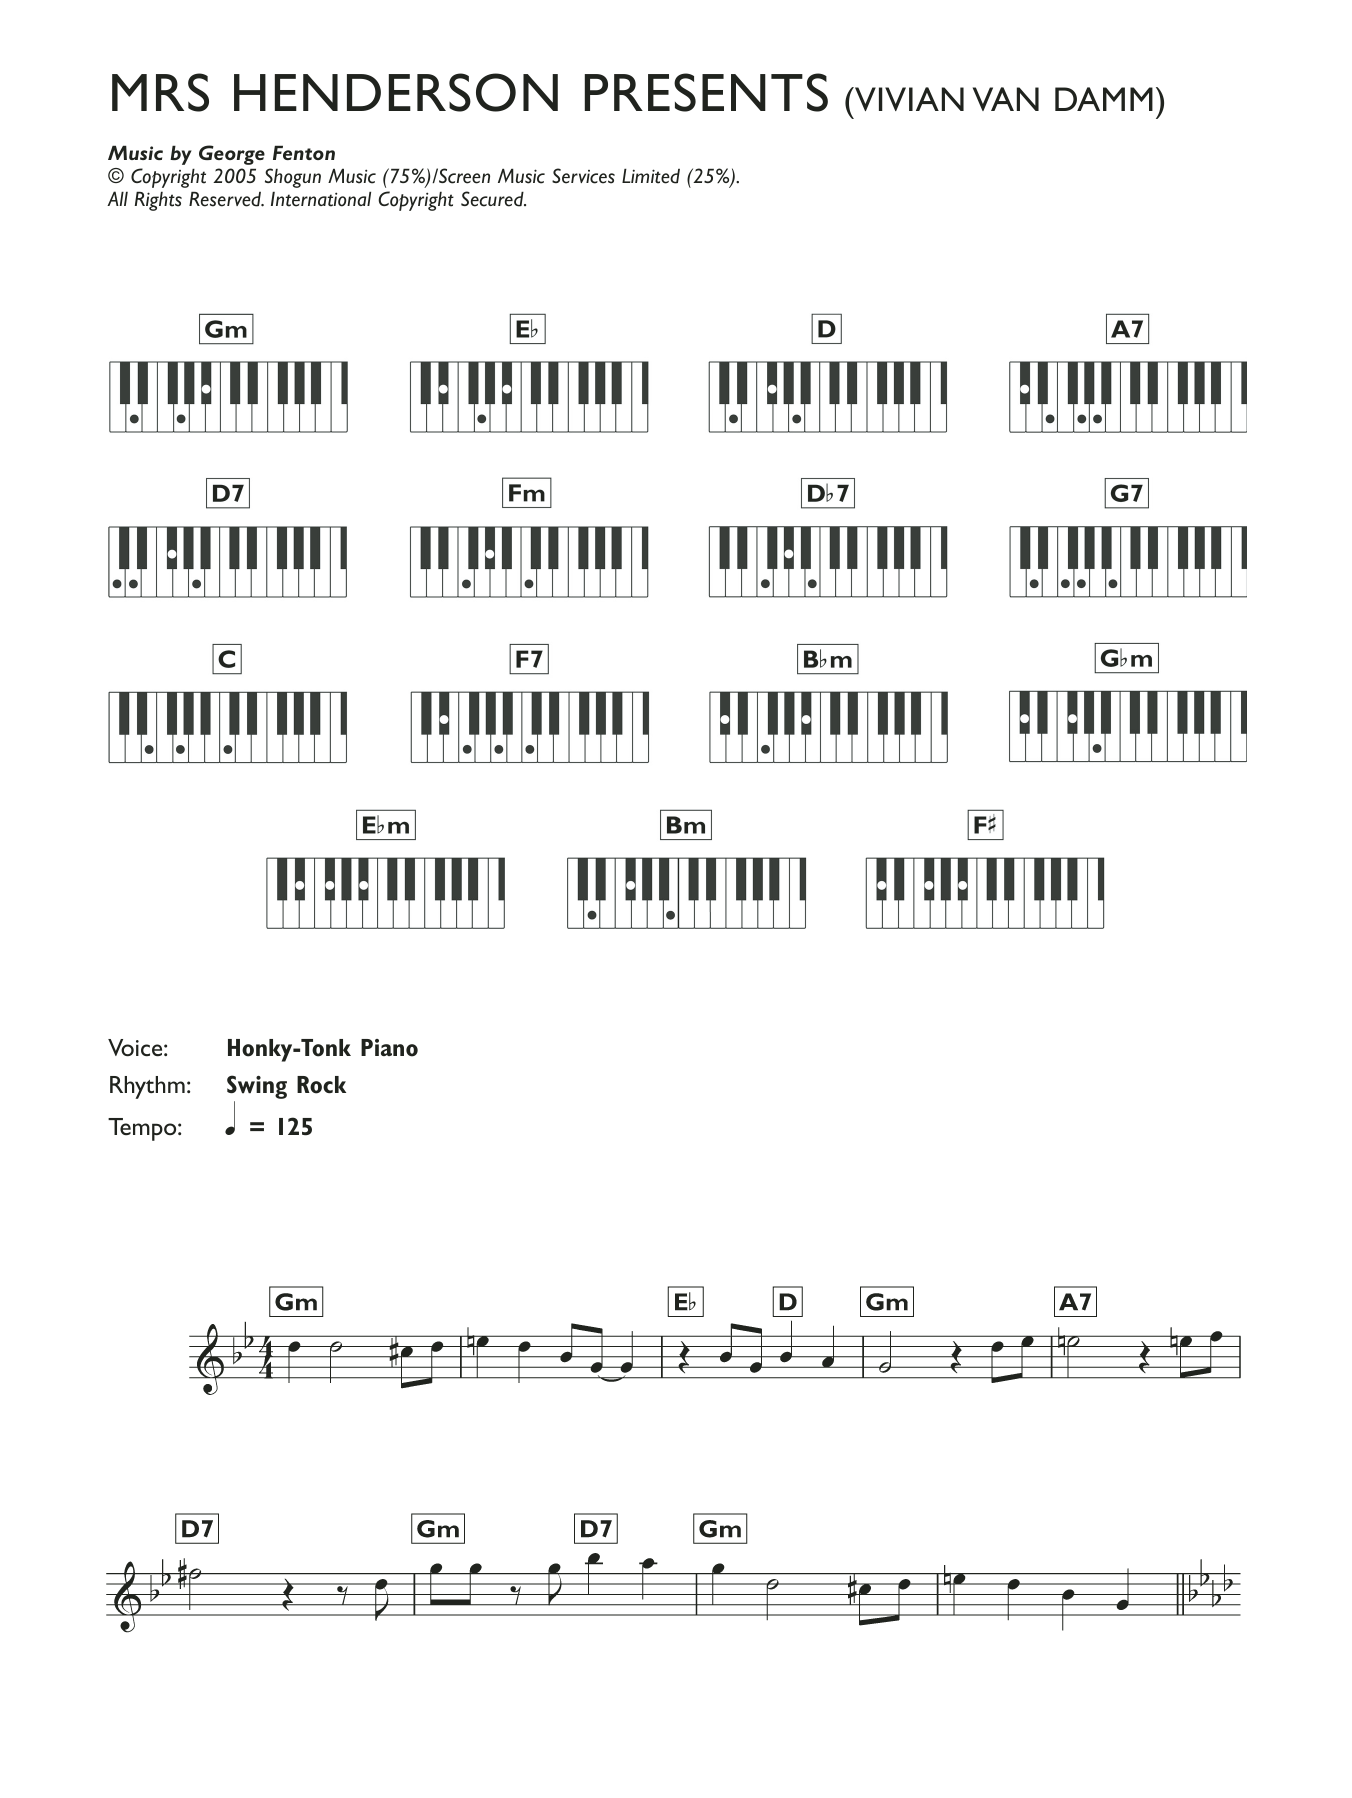 George Fenton Vivian Van Damm Sheet Music Notes & Chords for Keyboard - Download or Print PDF